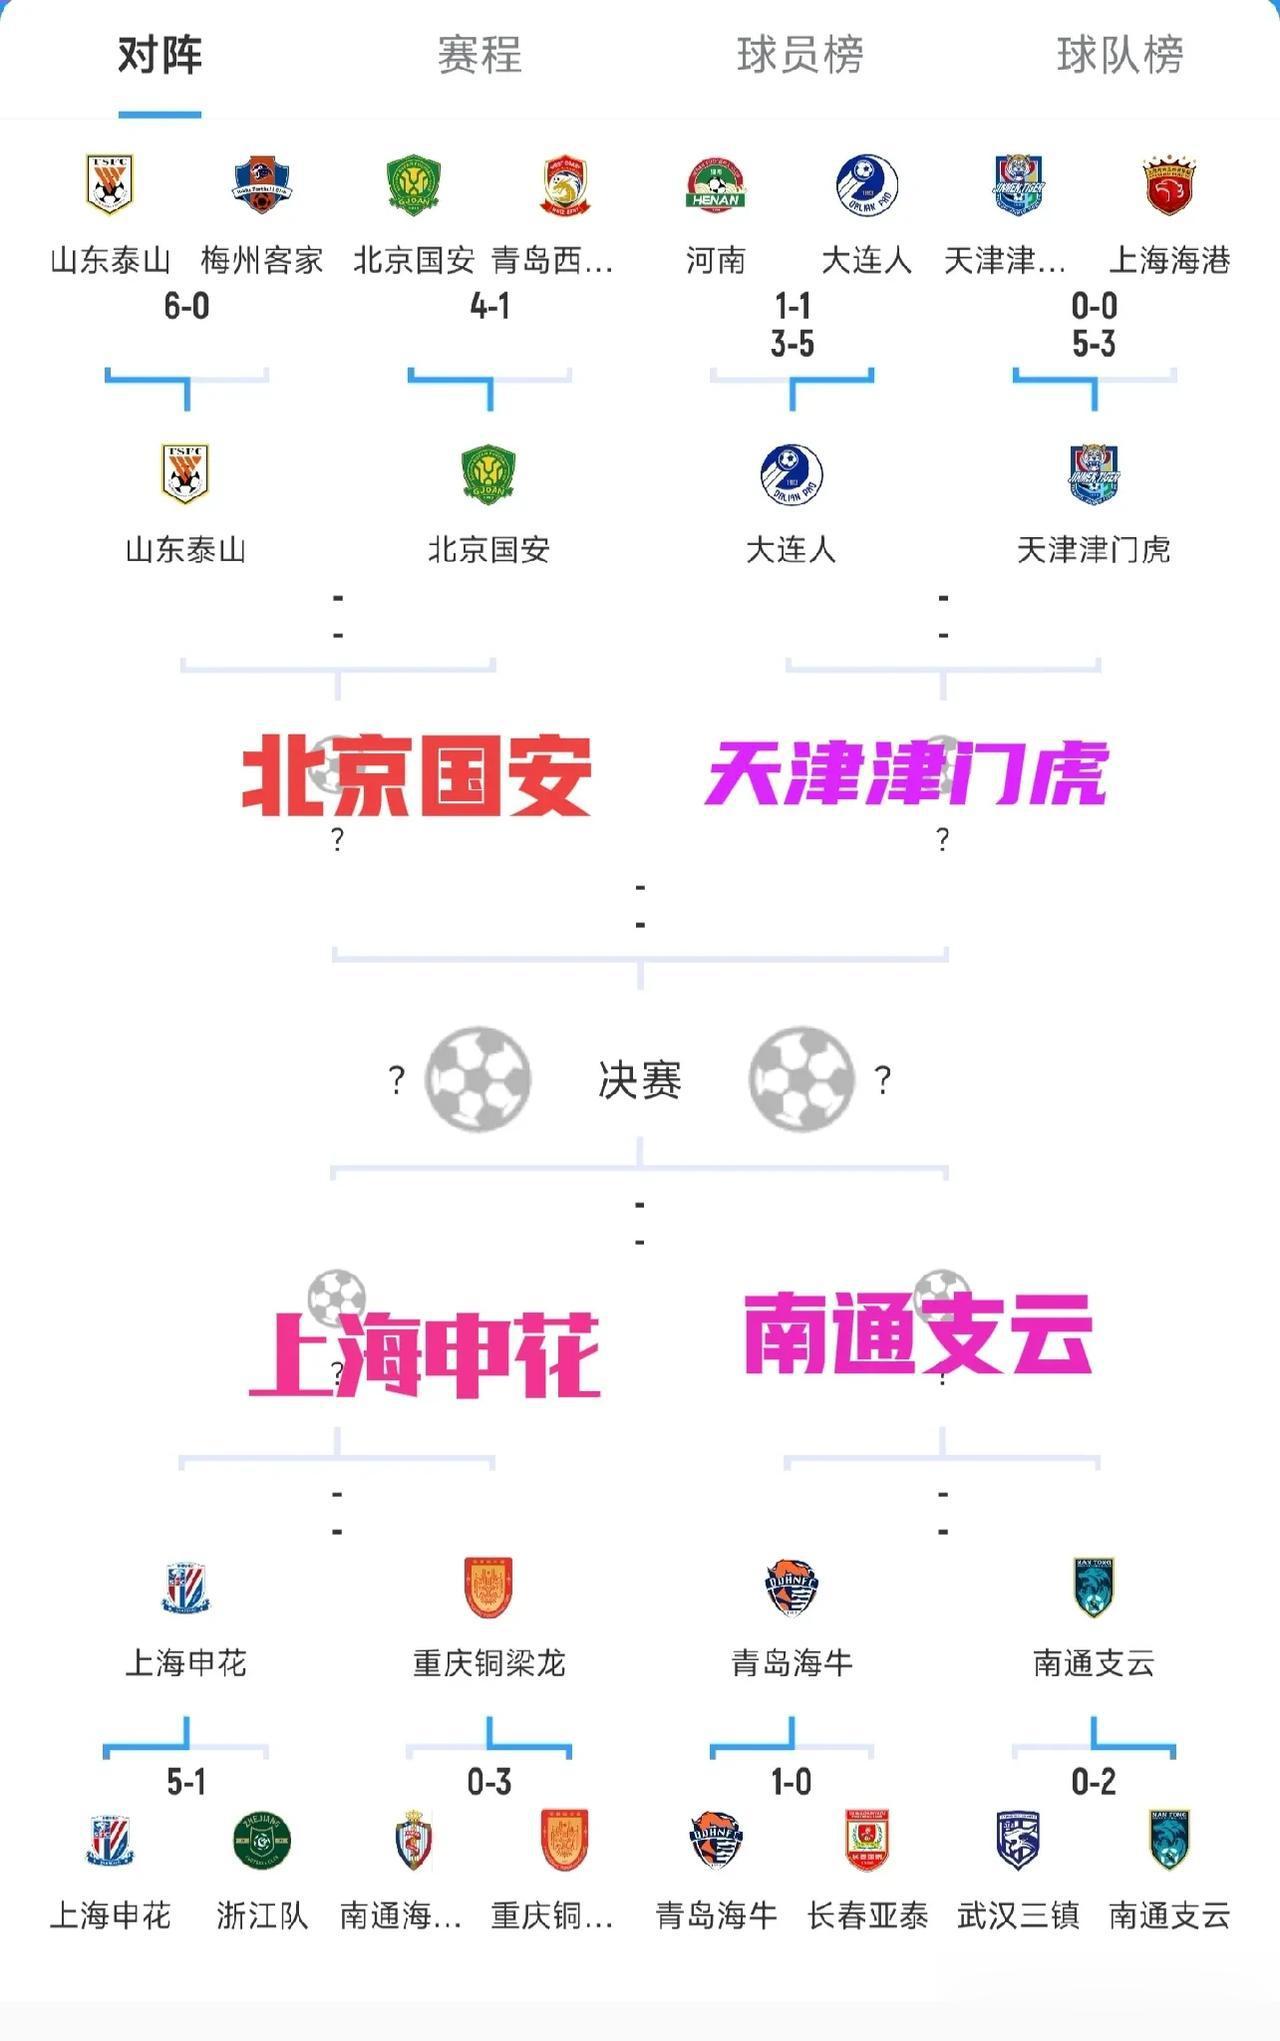 随着上海上港，武汉三镇足协杯被淘汰，不出意外的话，足协杯冠军会在下面2个队产生
(1)